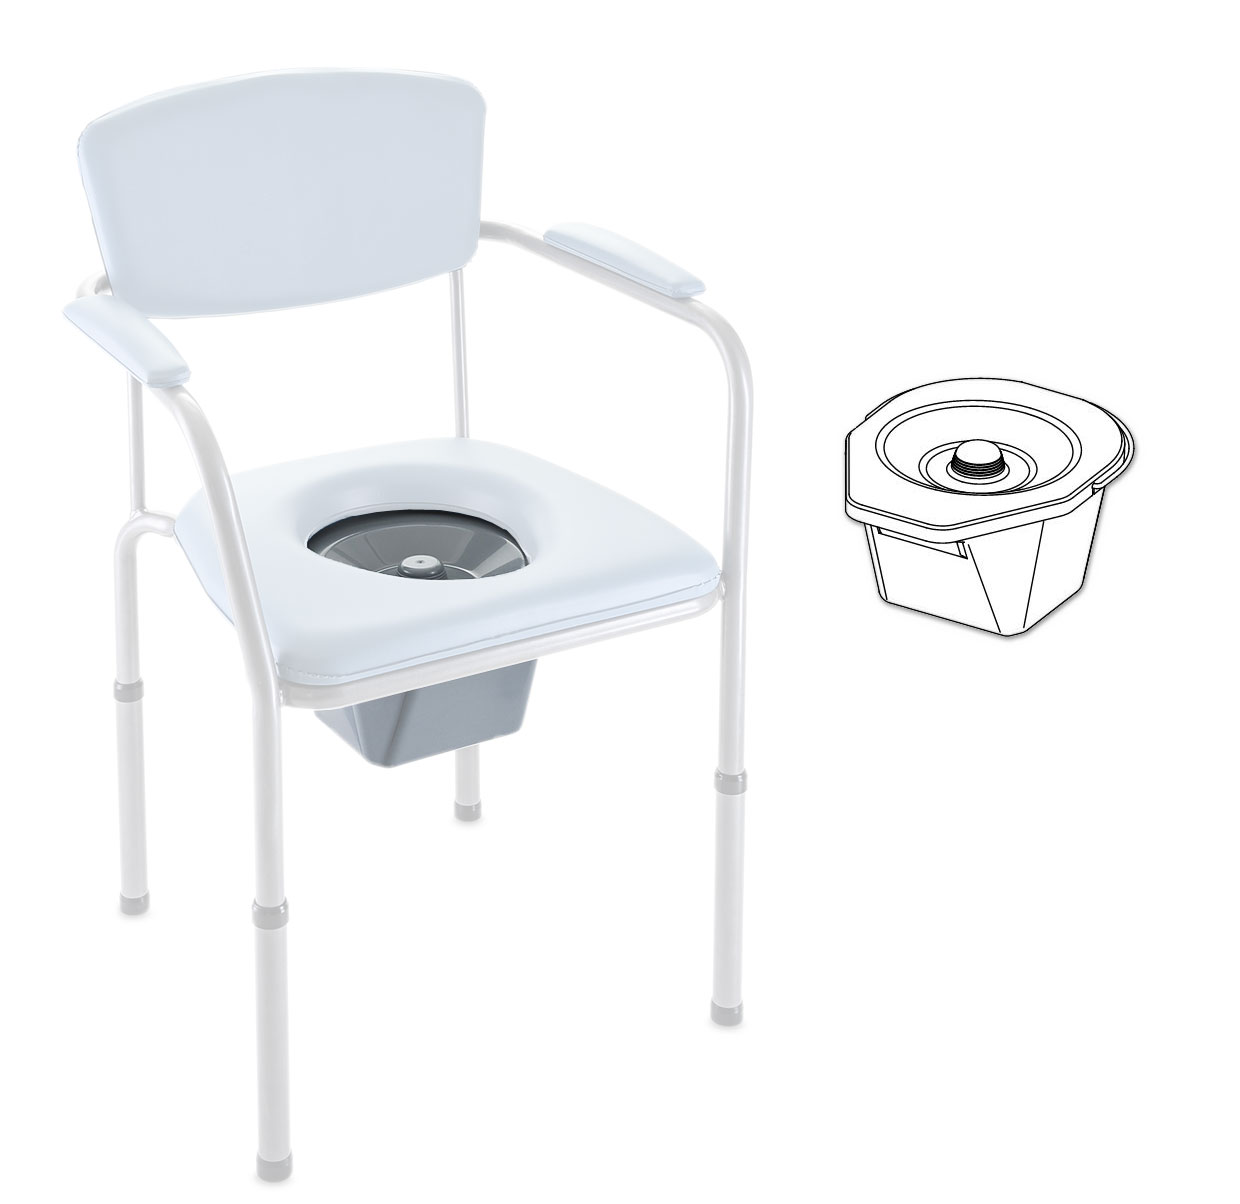 Toilettentopf mit Deckel für Invacare H450 / H450LA / H440